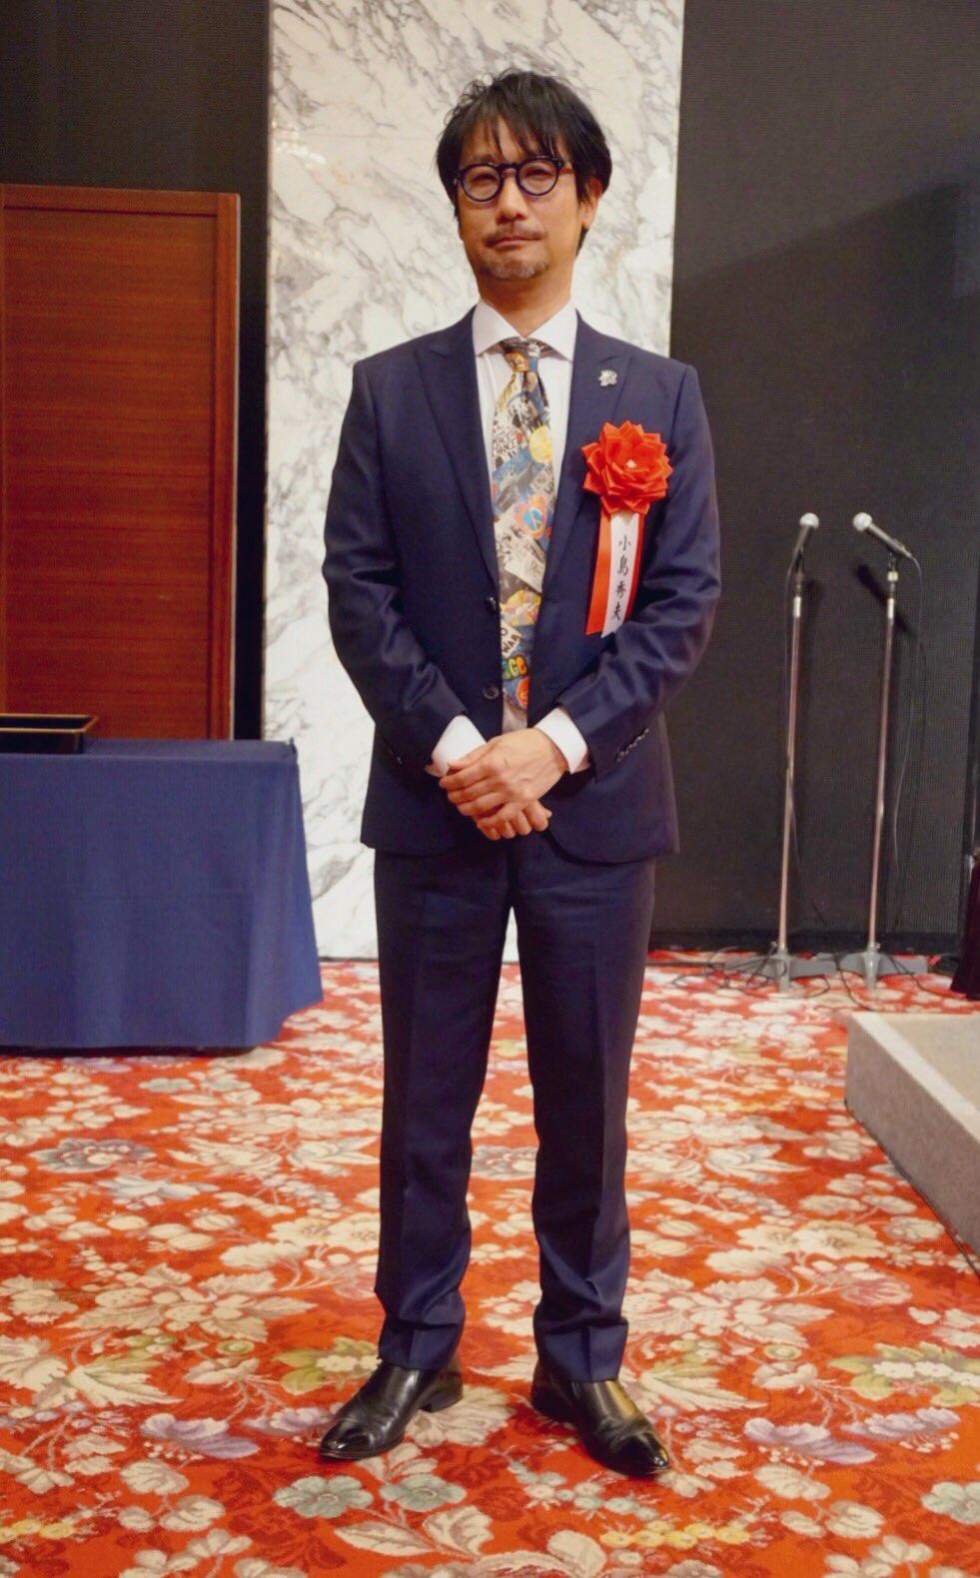 Фото: Кодзима в костюме на вручении награды японской академии искусств